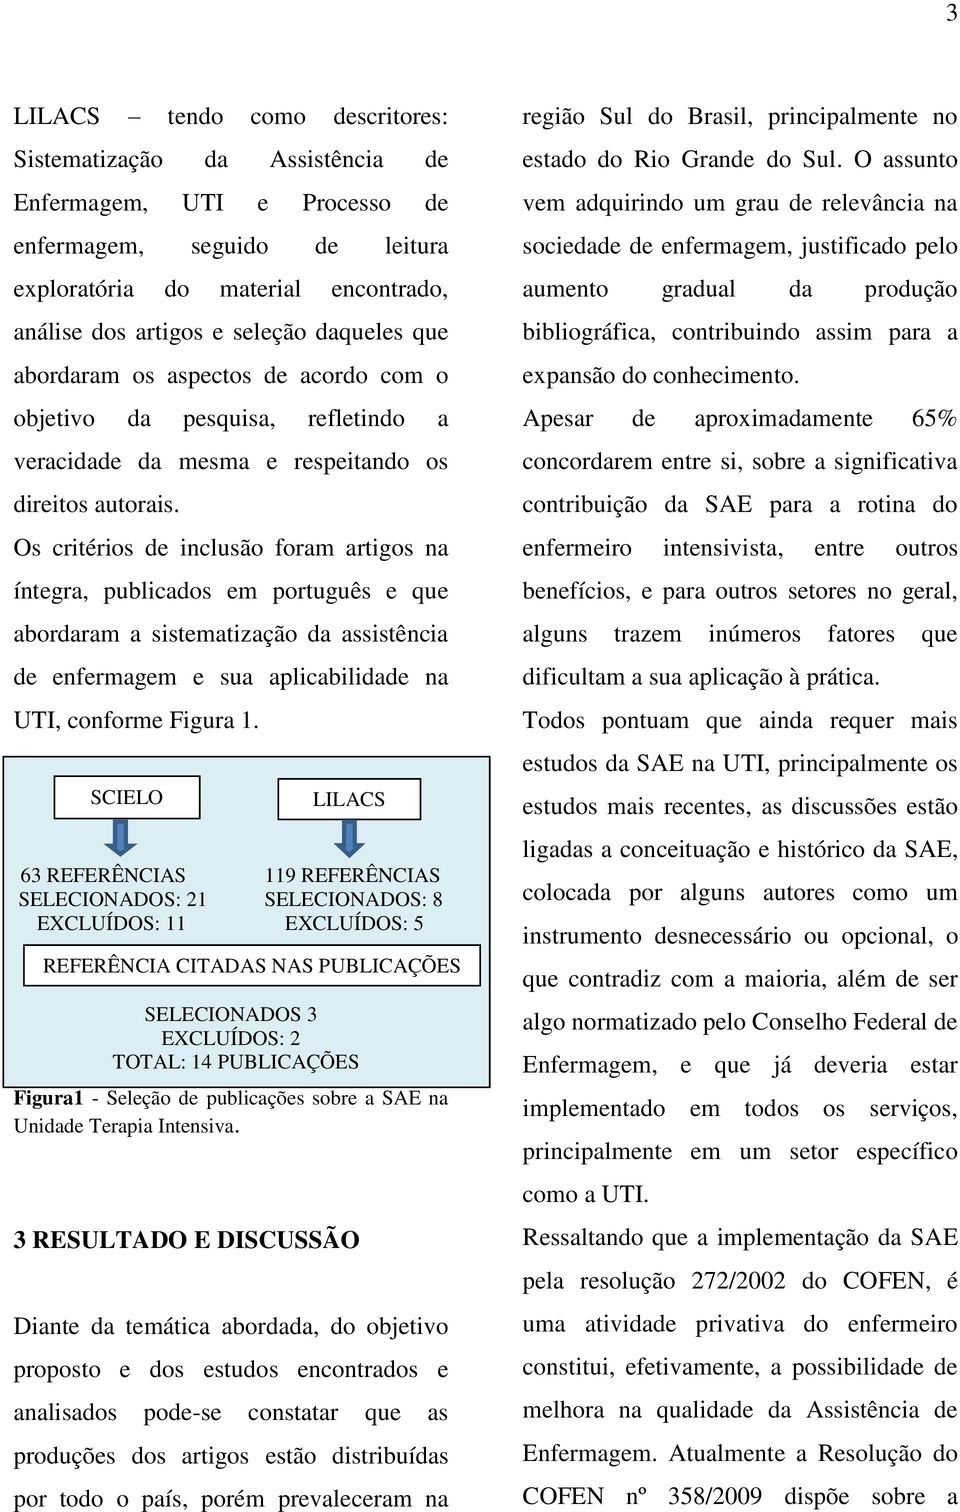 Os critérios de inclusão foram artigos na íntegra, publicados em português e que abordaram a sistematização da assistência de enfermagem e sua aplicabilidade na UTI, conforme Figura 1.